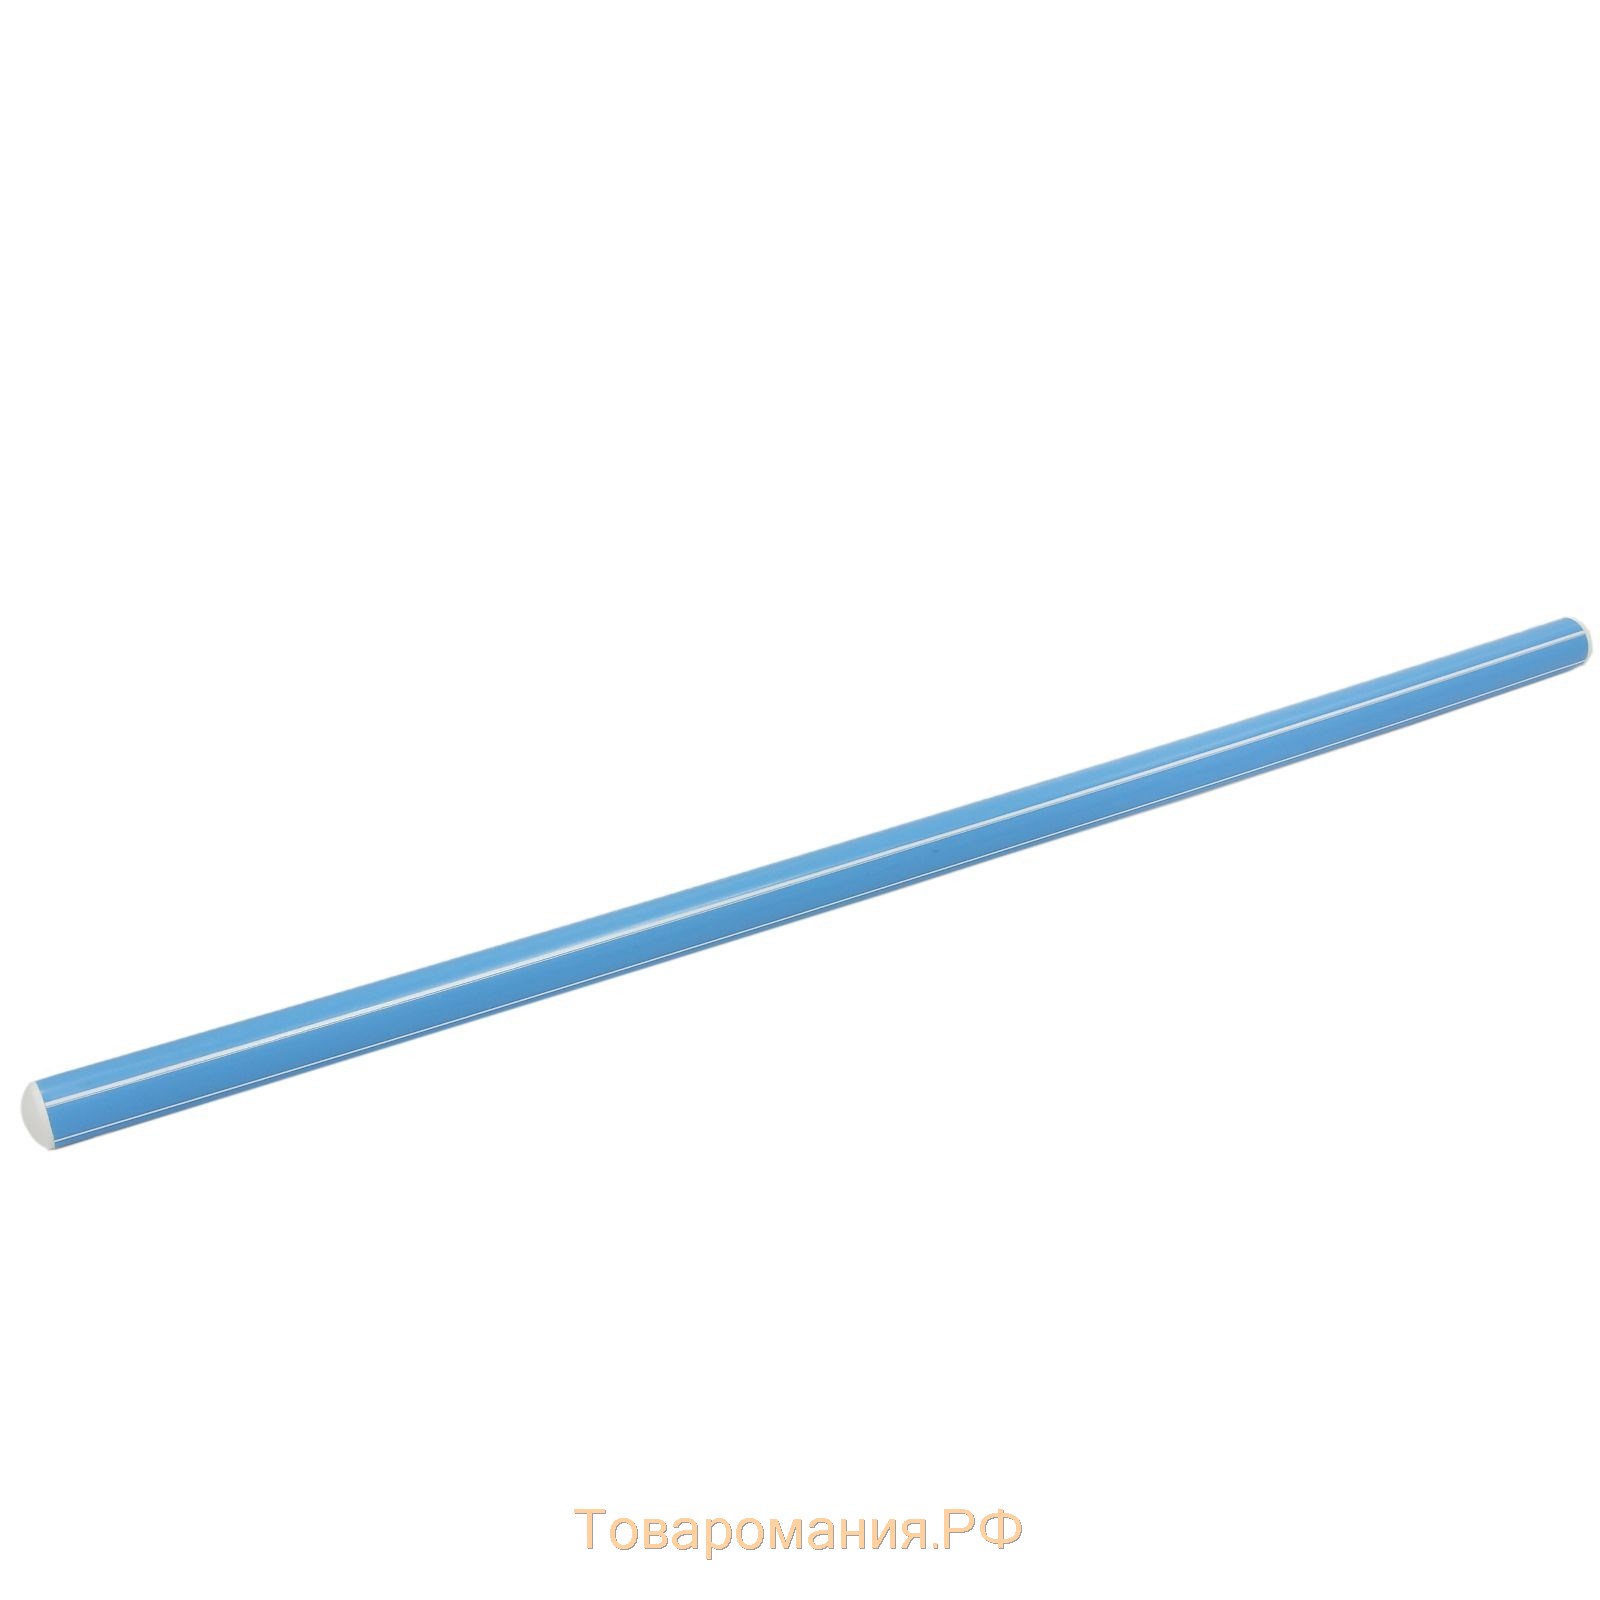 Палка гимнастическая 70 см, цвет голубой